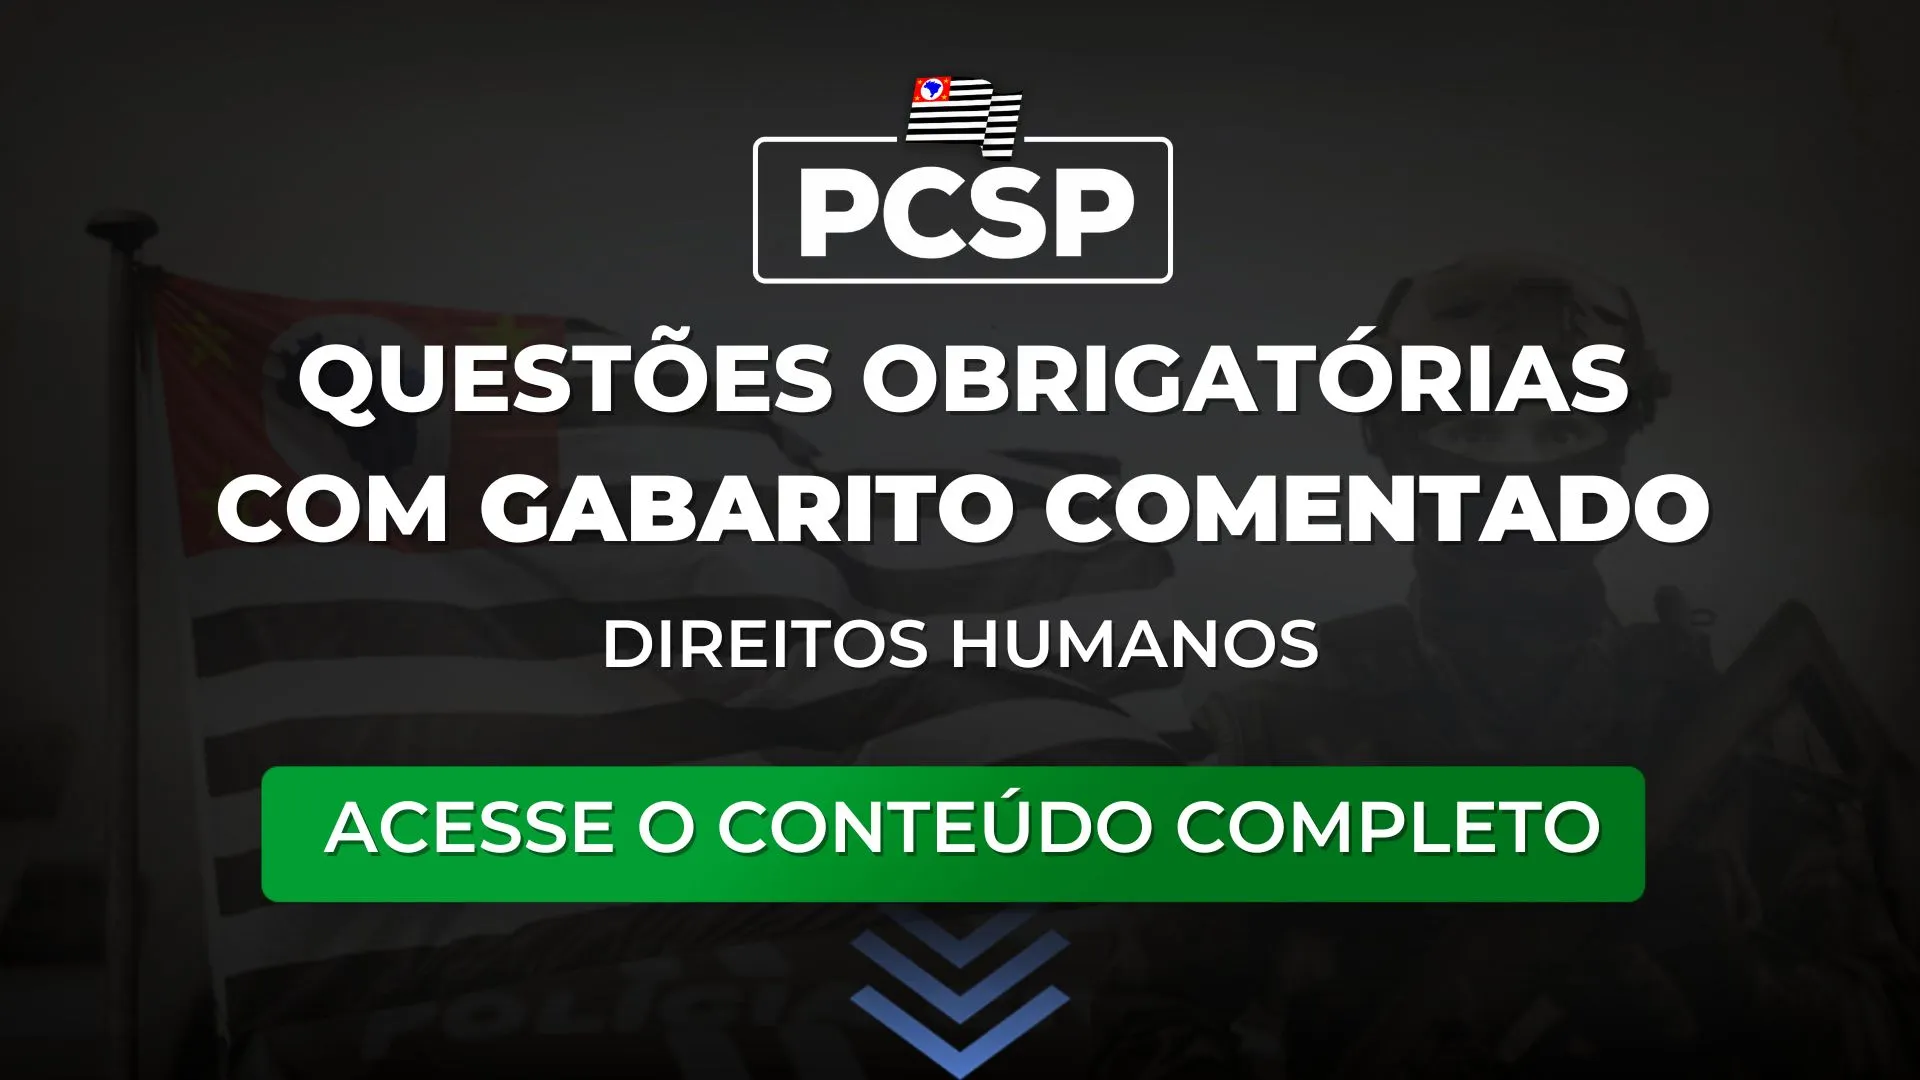 PCSP: Questões obrigatórias com gabarito comentado de Direitos Humanos para o concurso